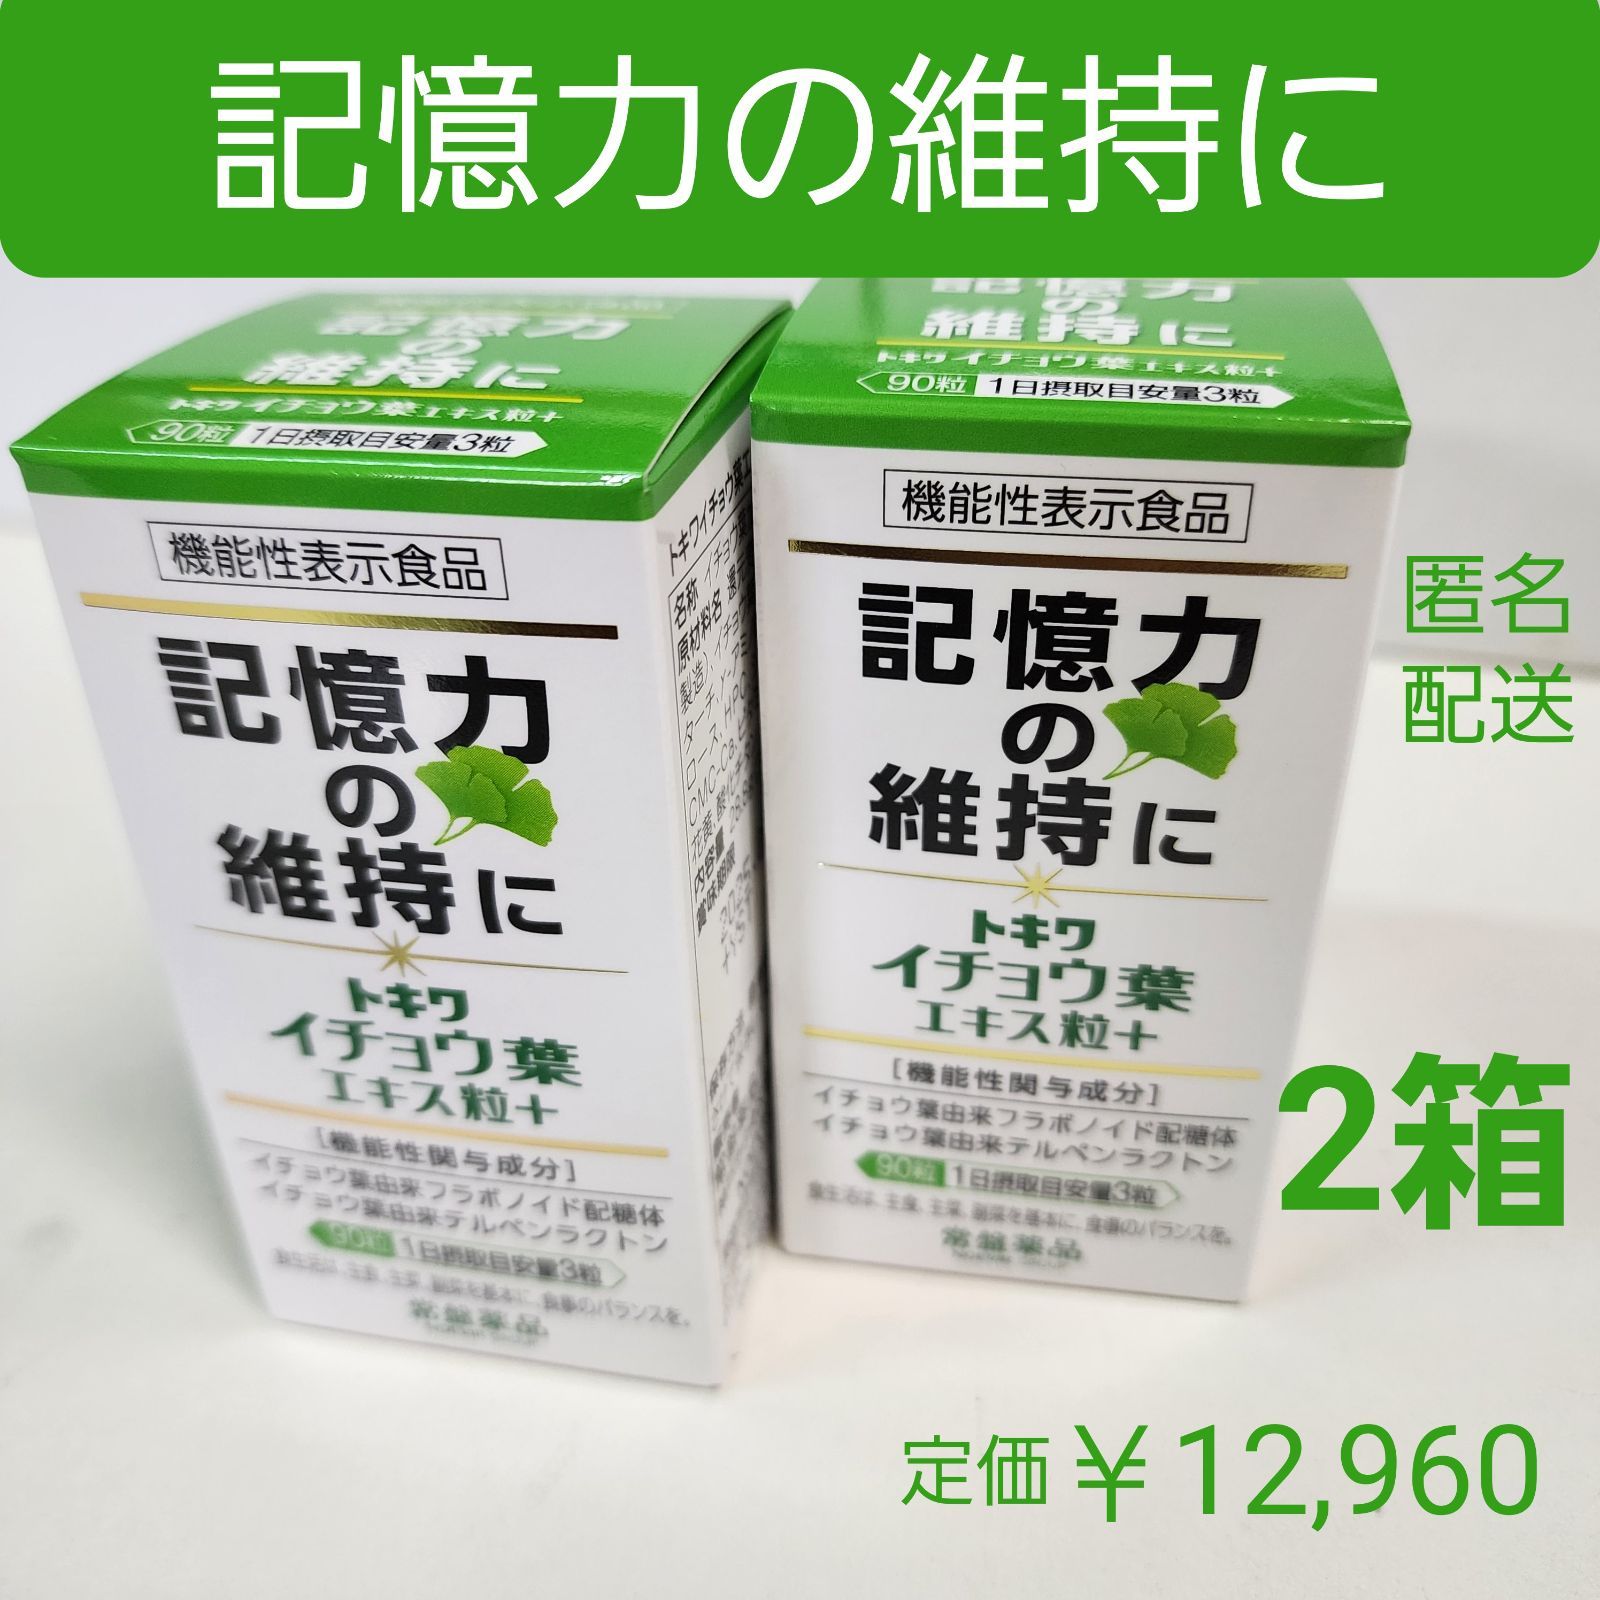 最高品質の マルマンイチョウ葉エキスお徳用200粒入り 5箱賞味期限2026 